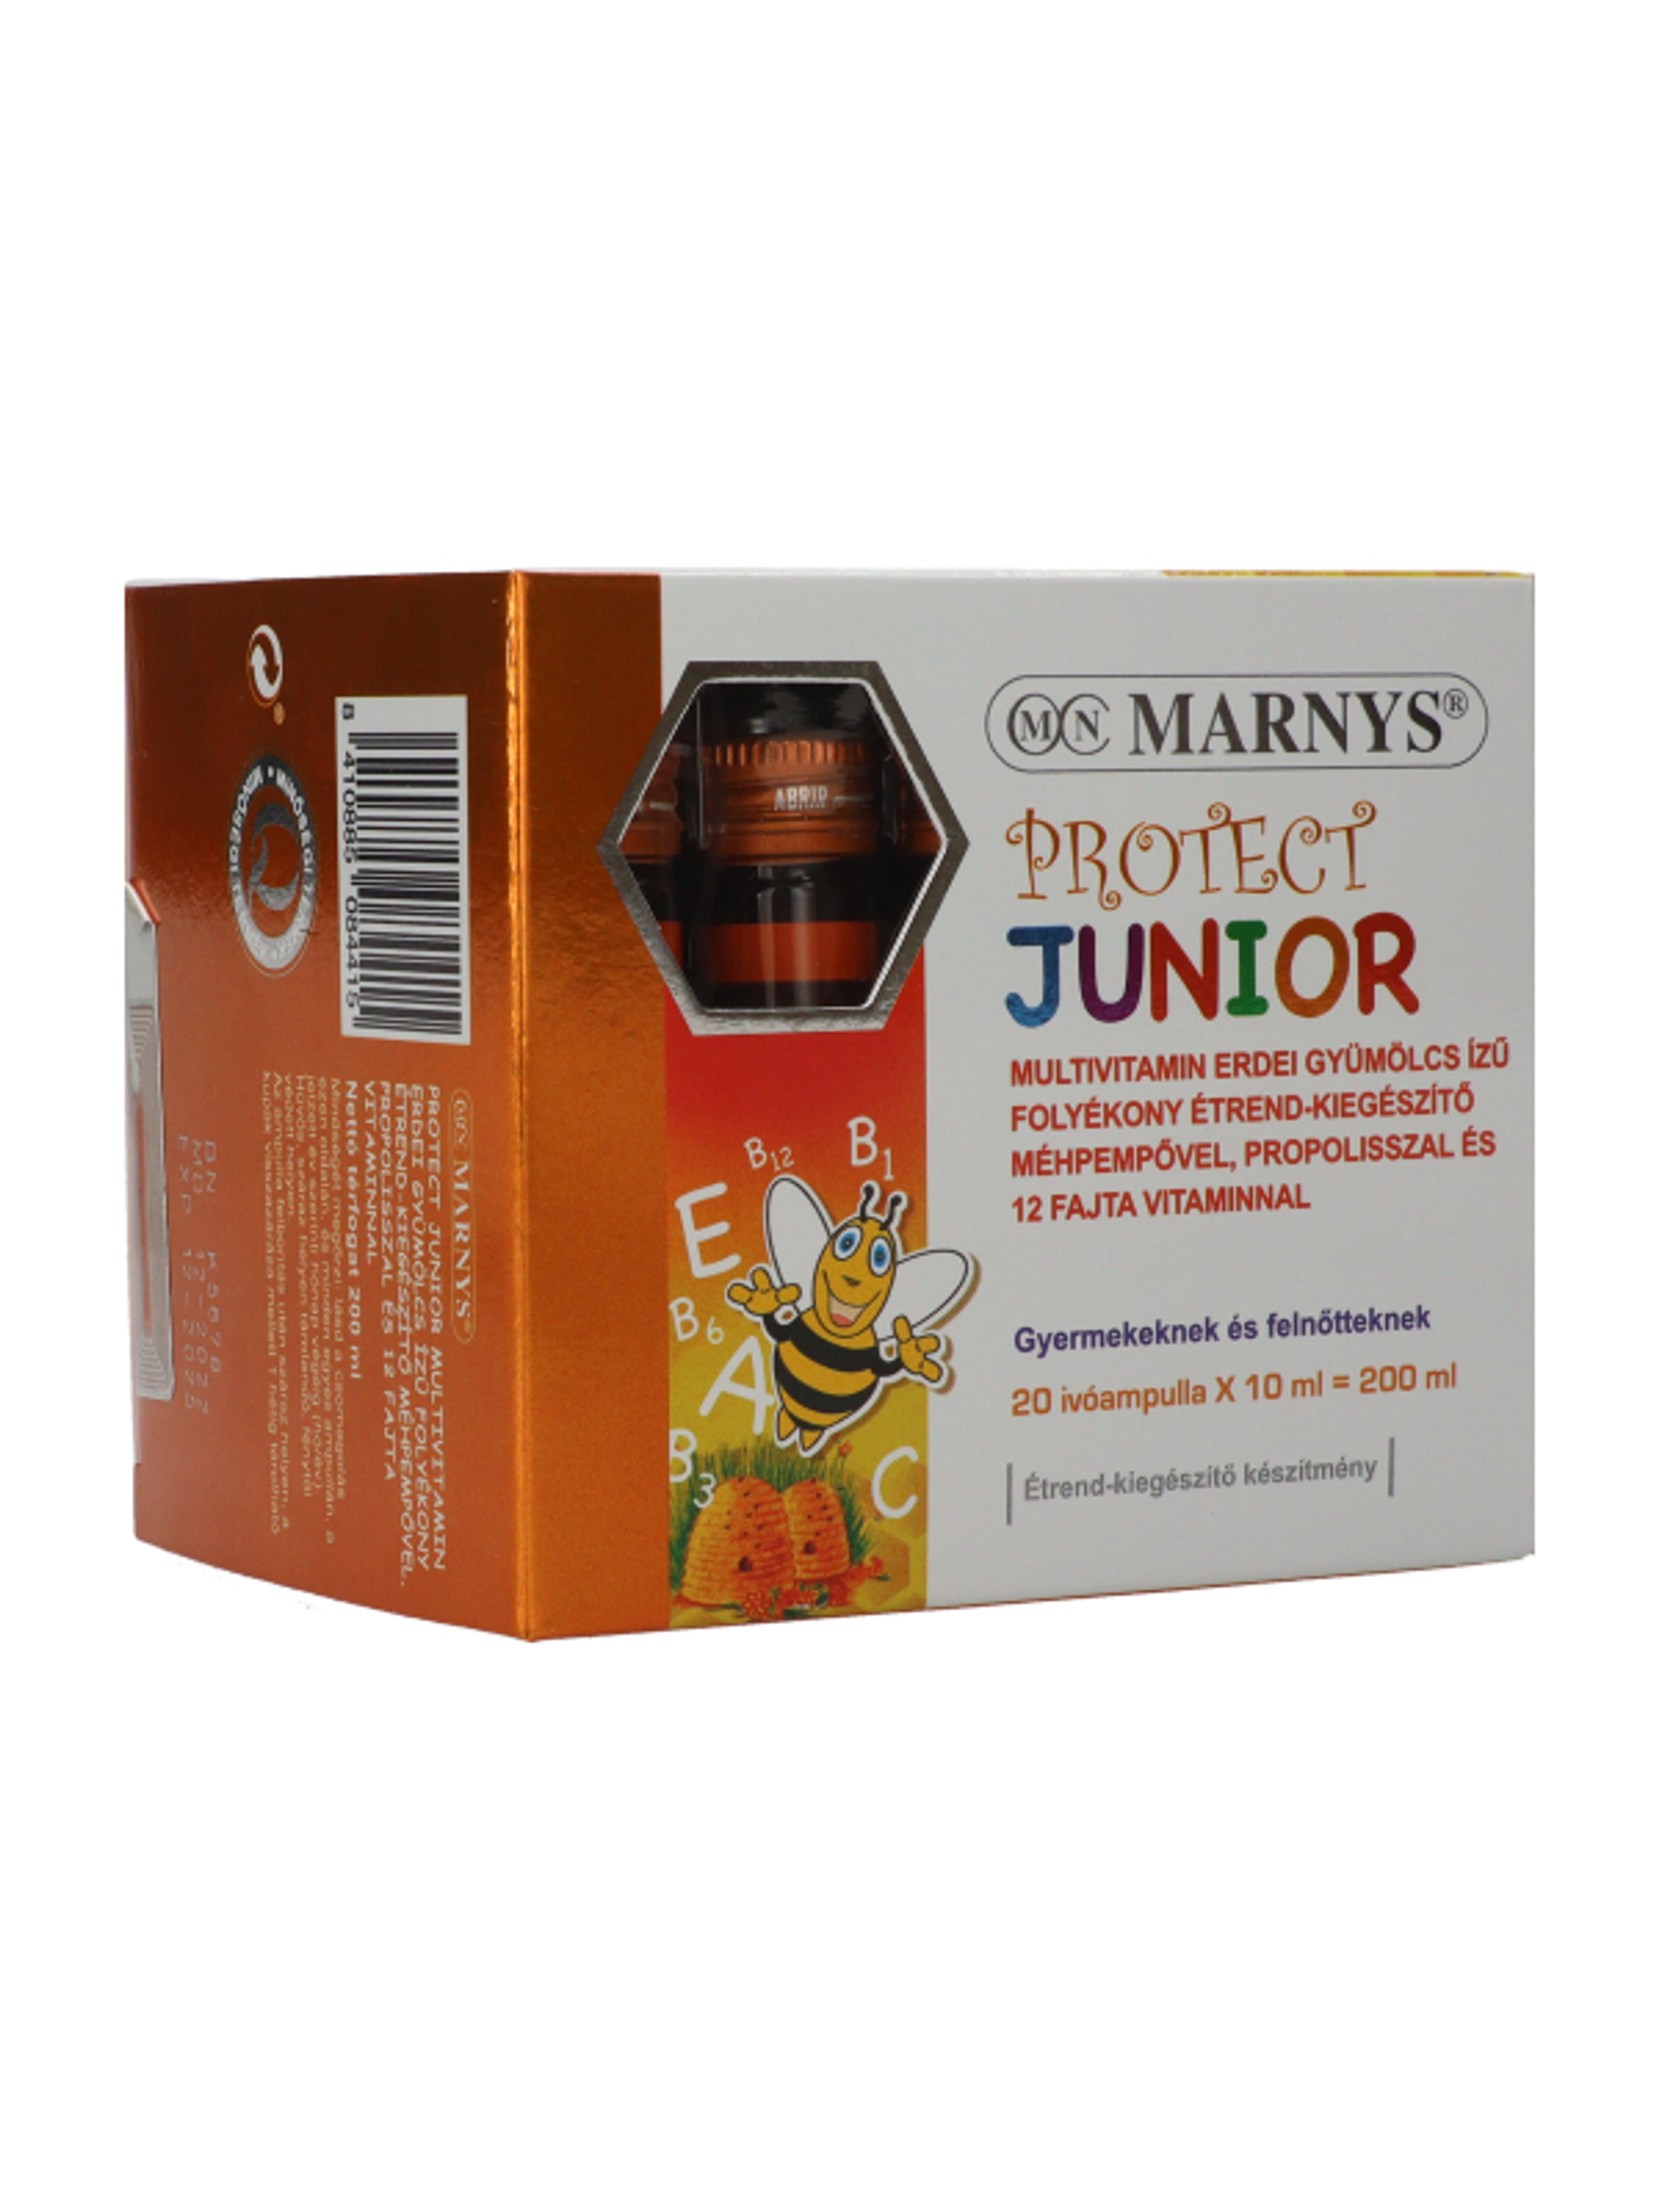 Marnys Protect Junior folyékony multivitamin méhpempővel és propolisszal ivóampullában (20 x 10 ml) - 200 ml-4